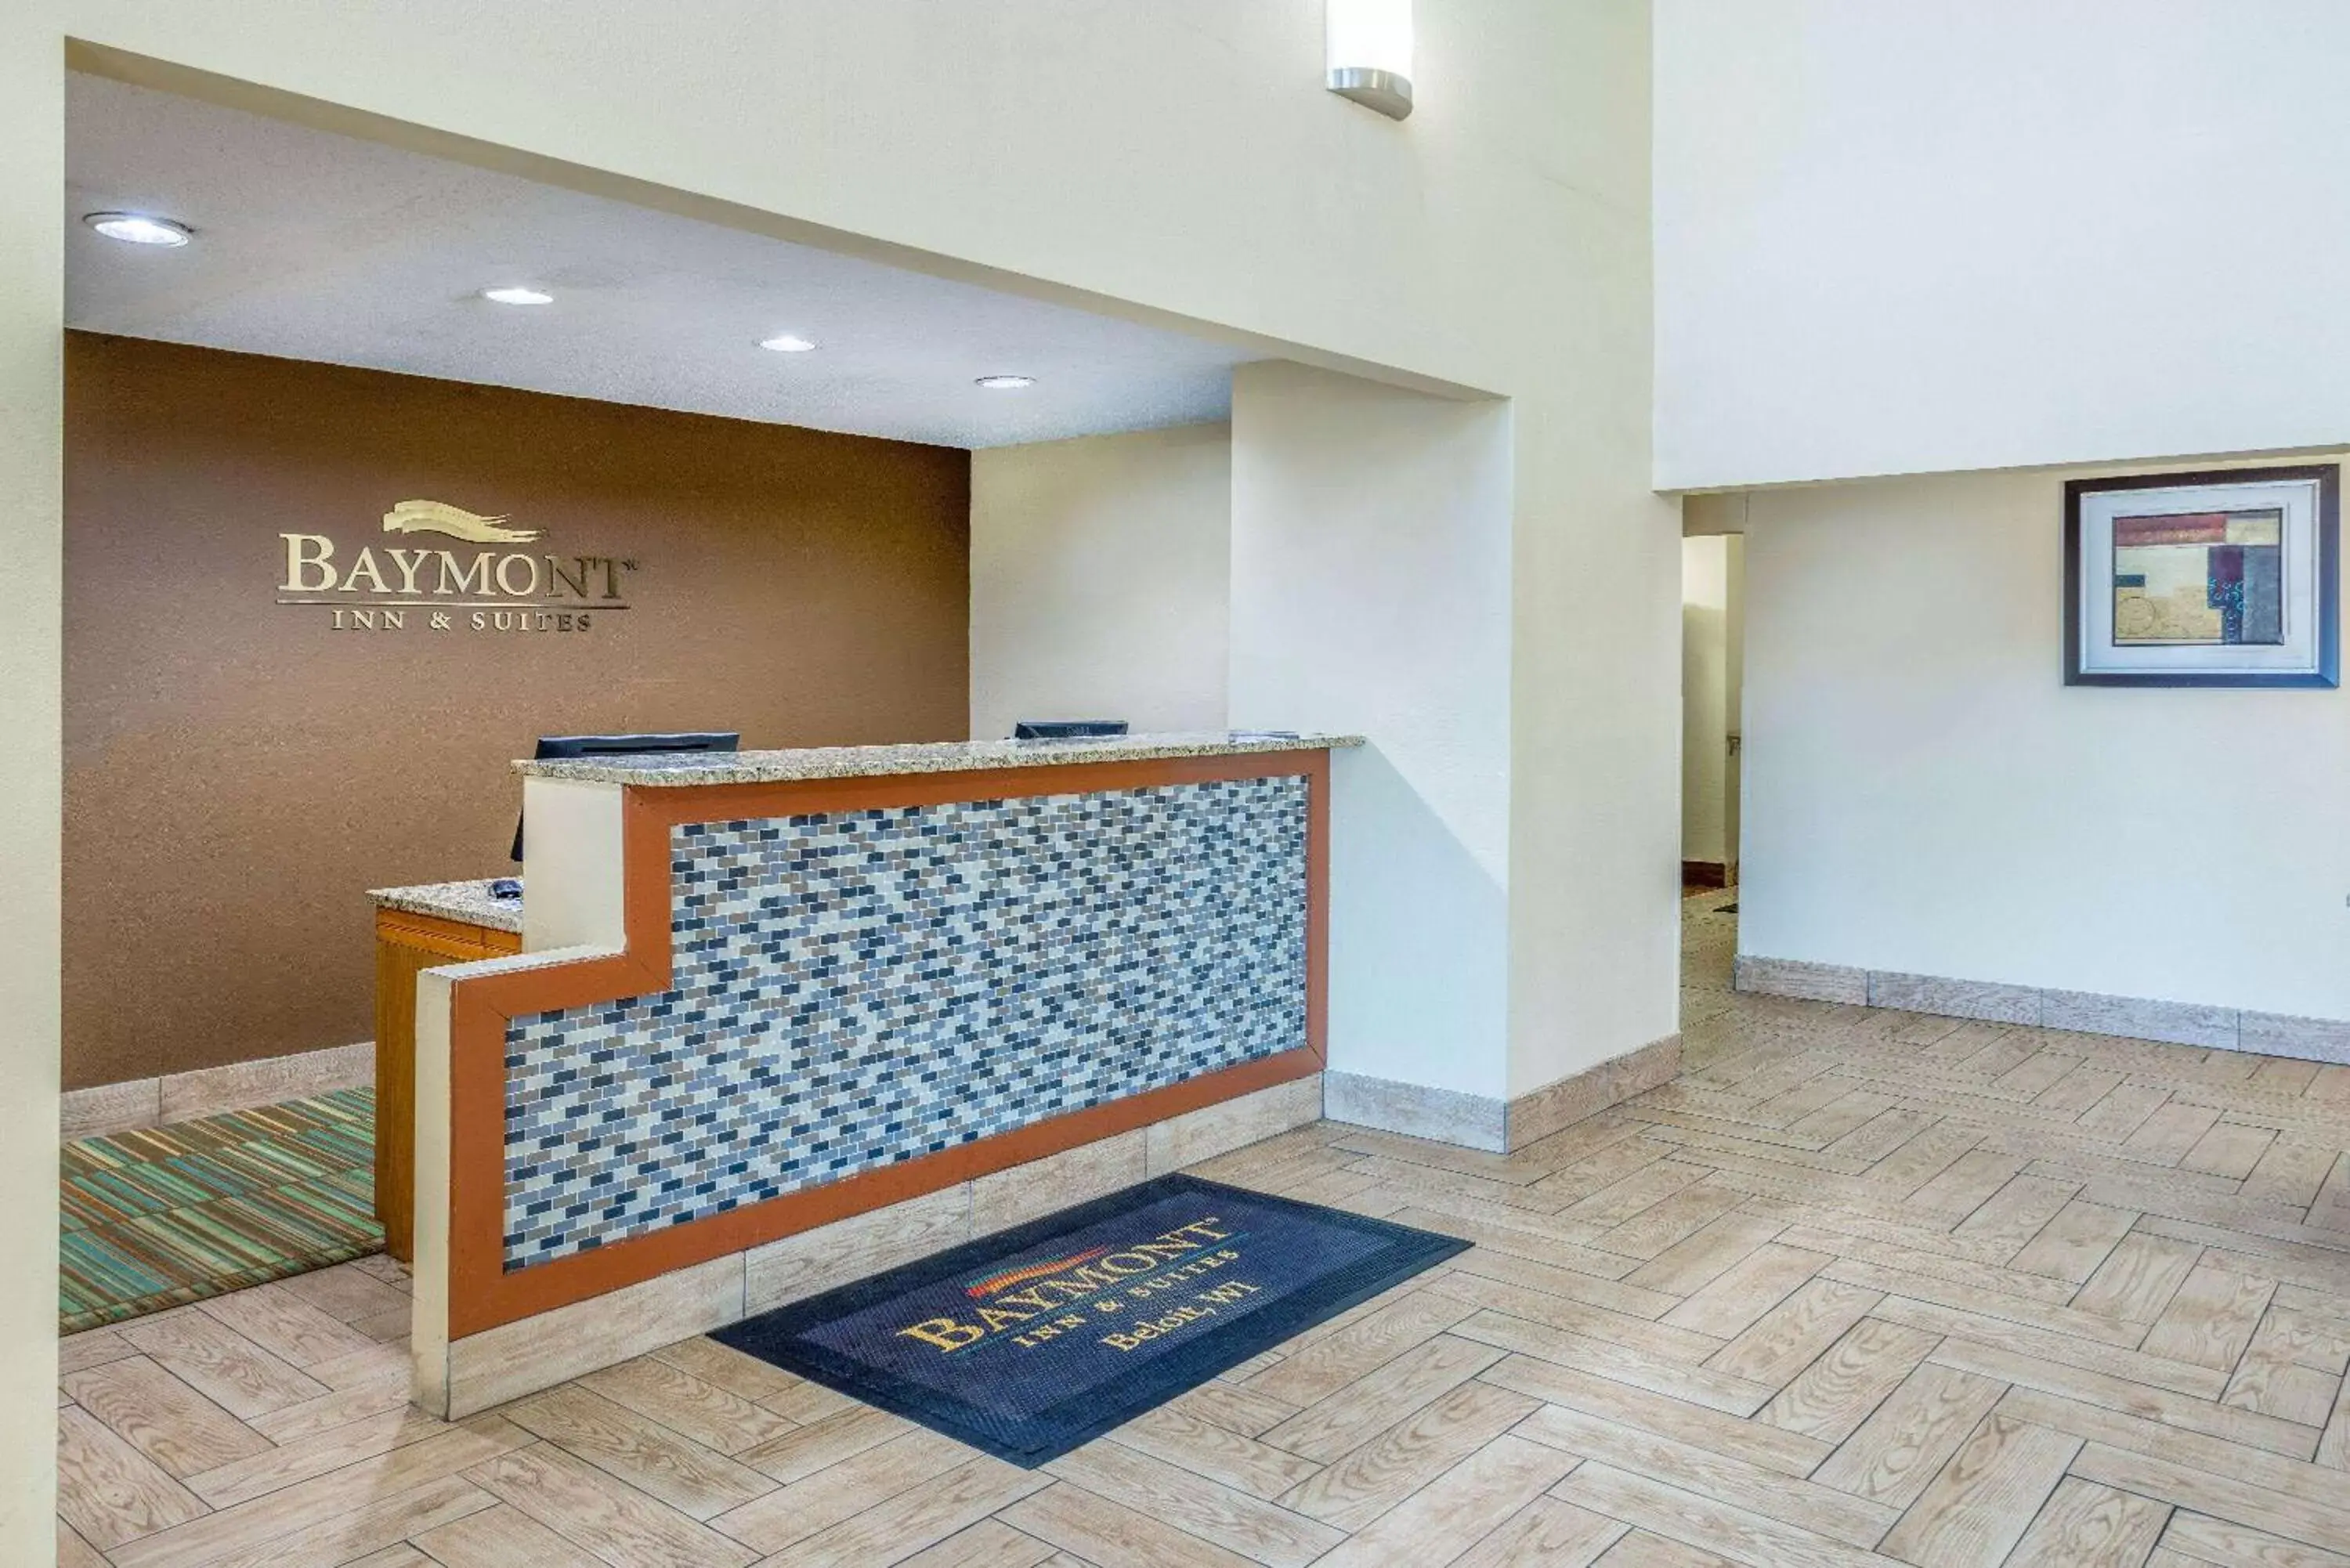 Lobby or reception, Lobby/Reception in Baymont by Wyndham Beloit